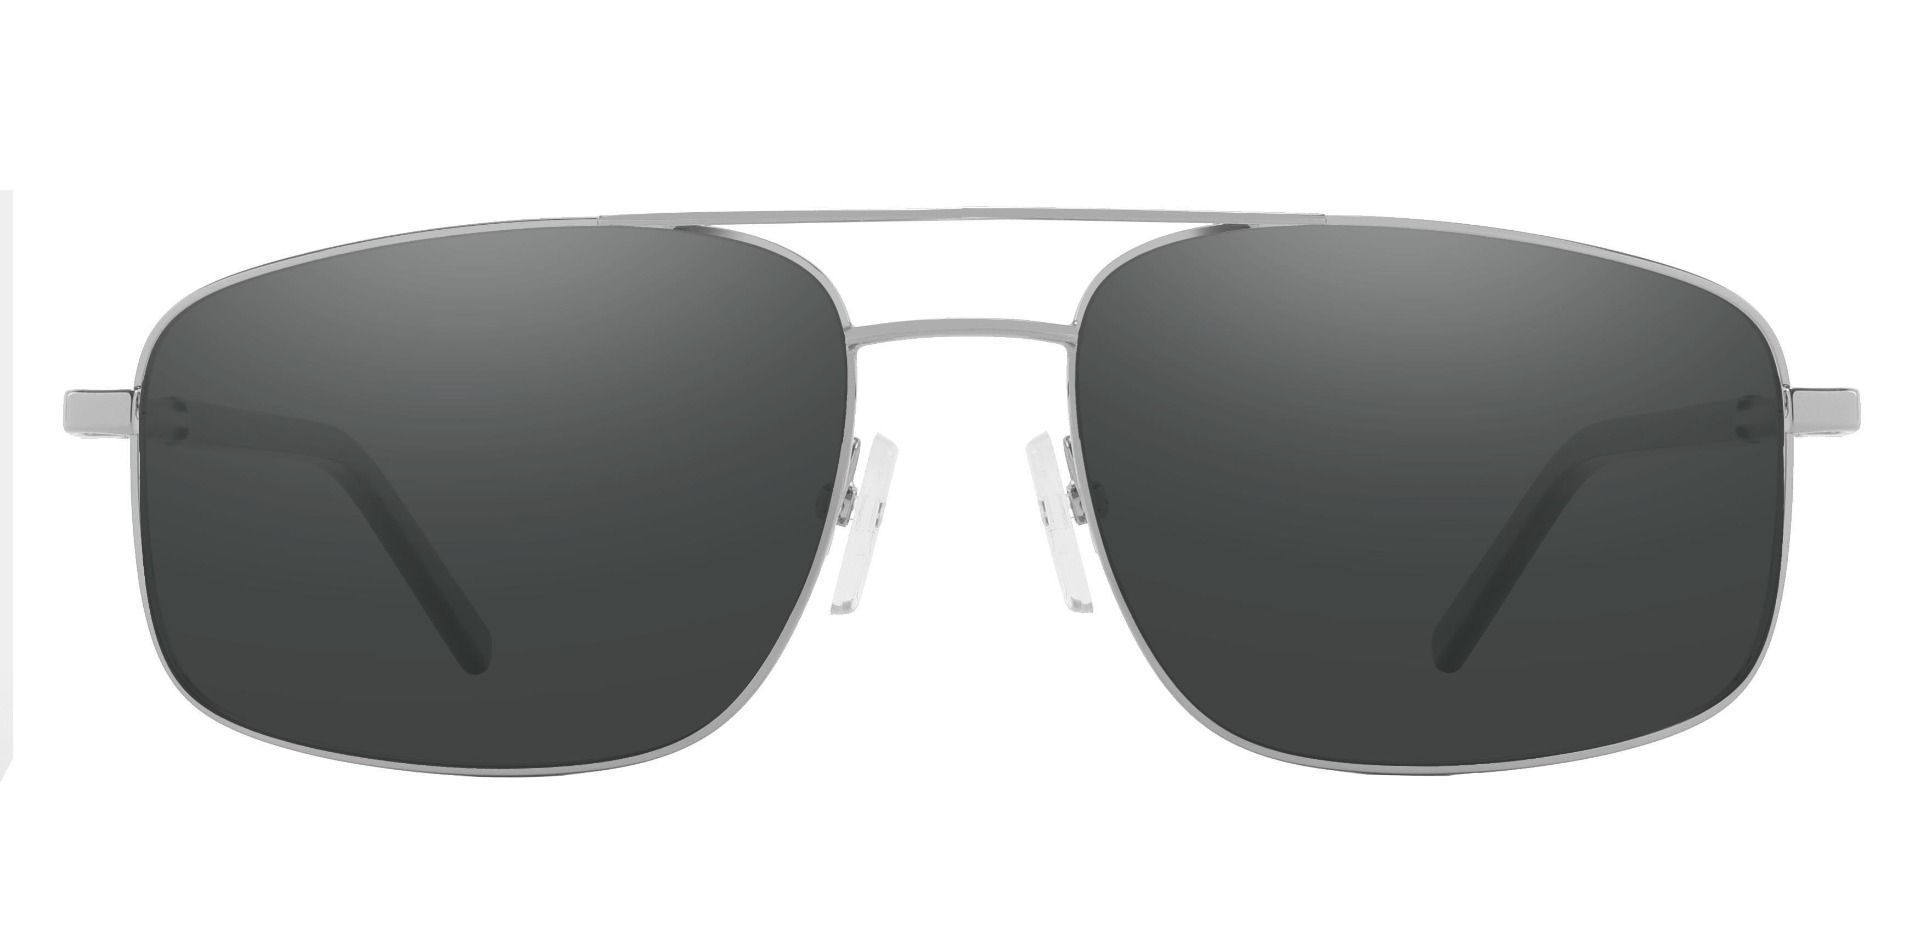 Davenport Aviator Prescription Sunglasses - Silver Frame With Gray Lenses